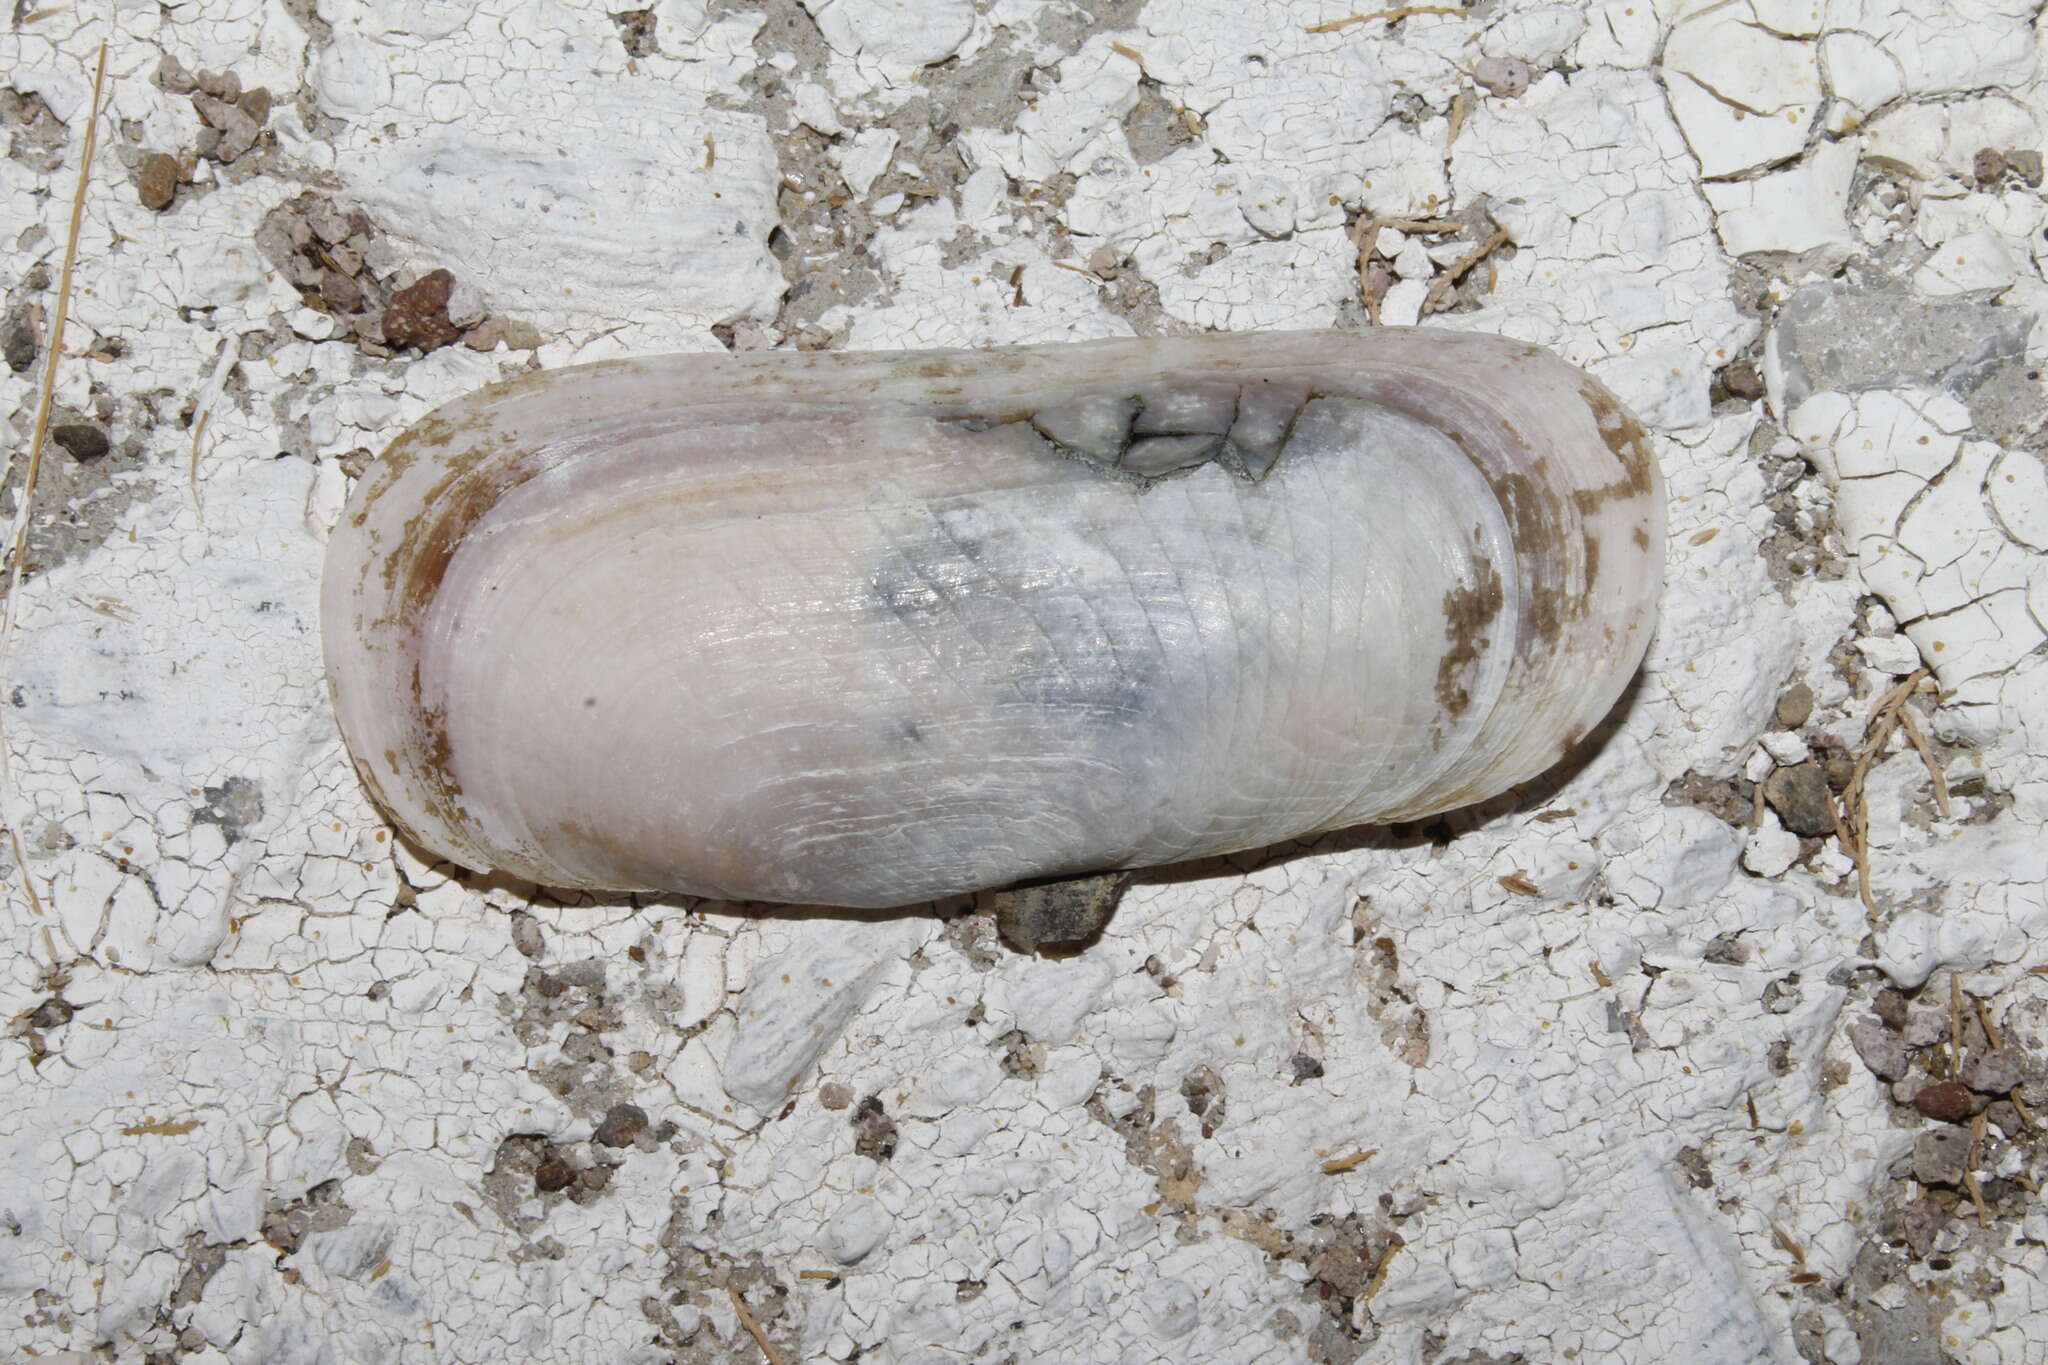 Image of short razor clam